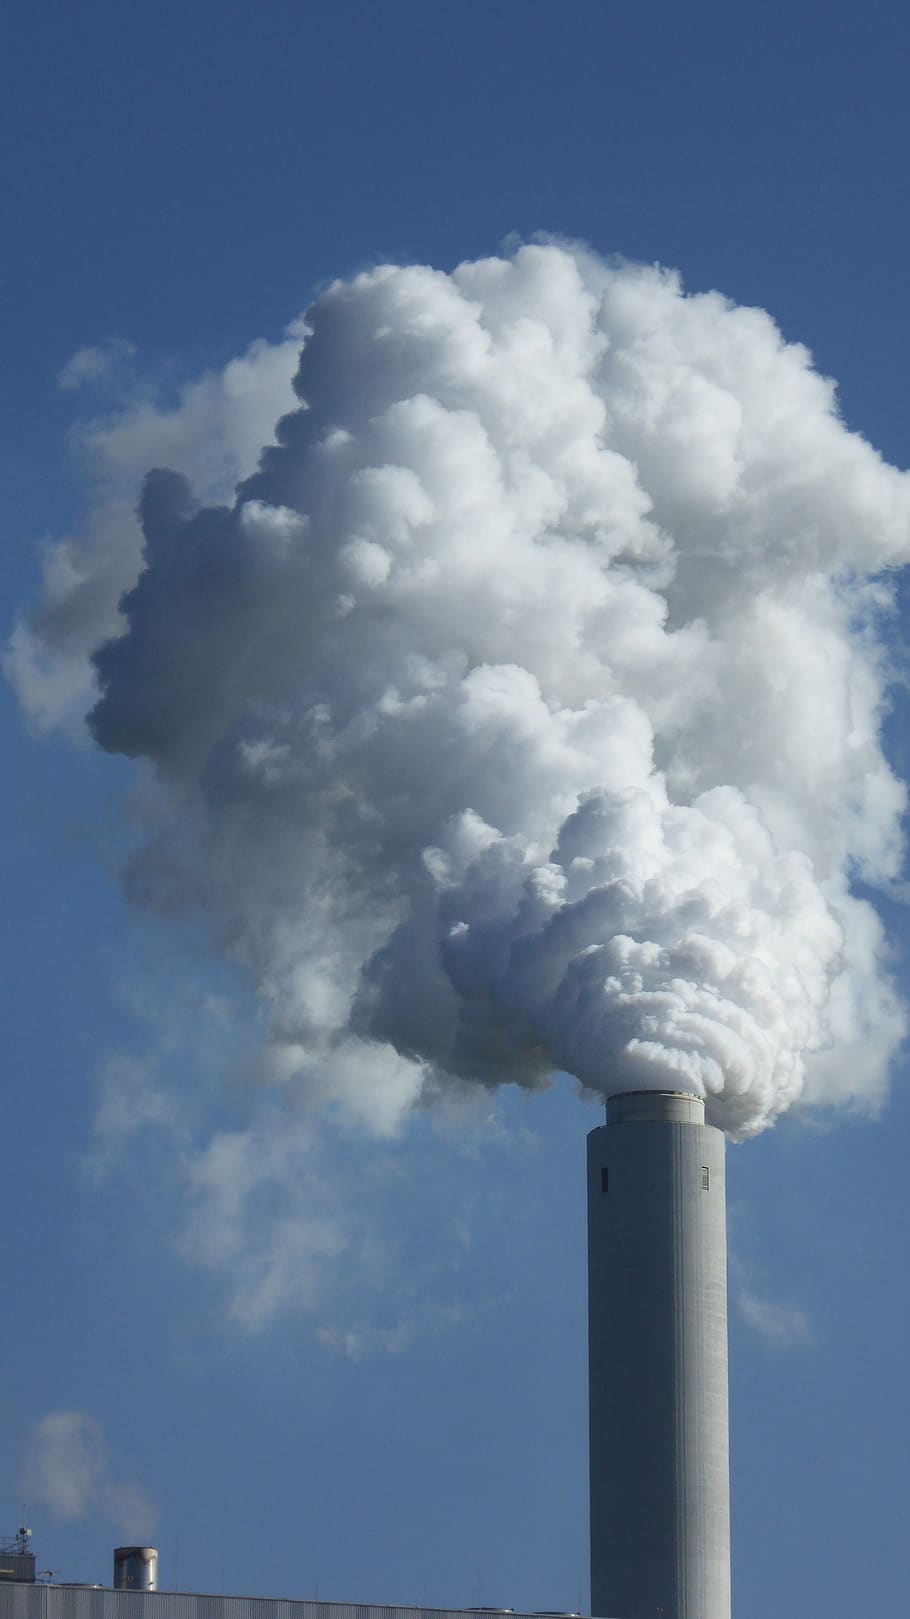 emissões, vapor, fumaça, chaminé, lareira, meio ambiente, poluição atmosférica, poluição, indústria, clima